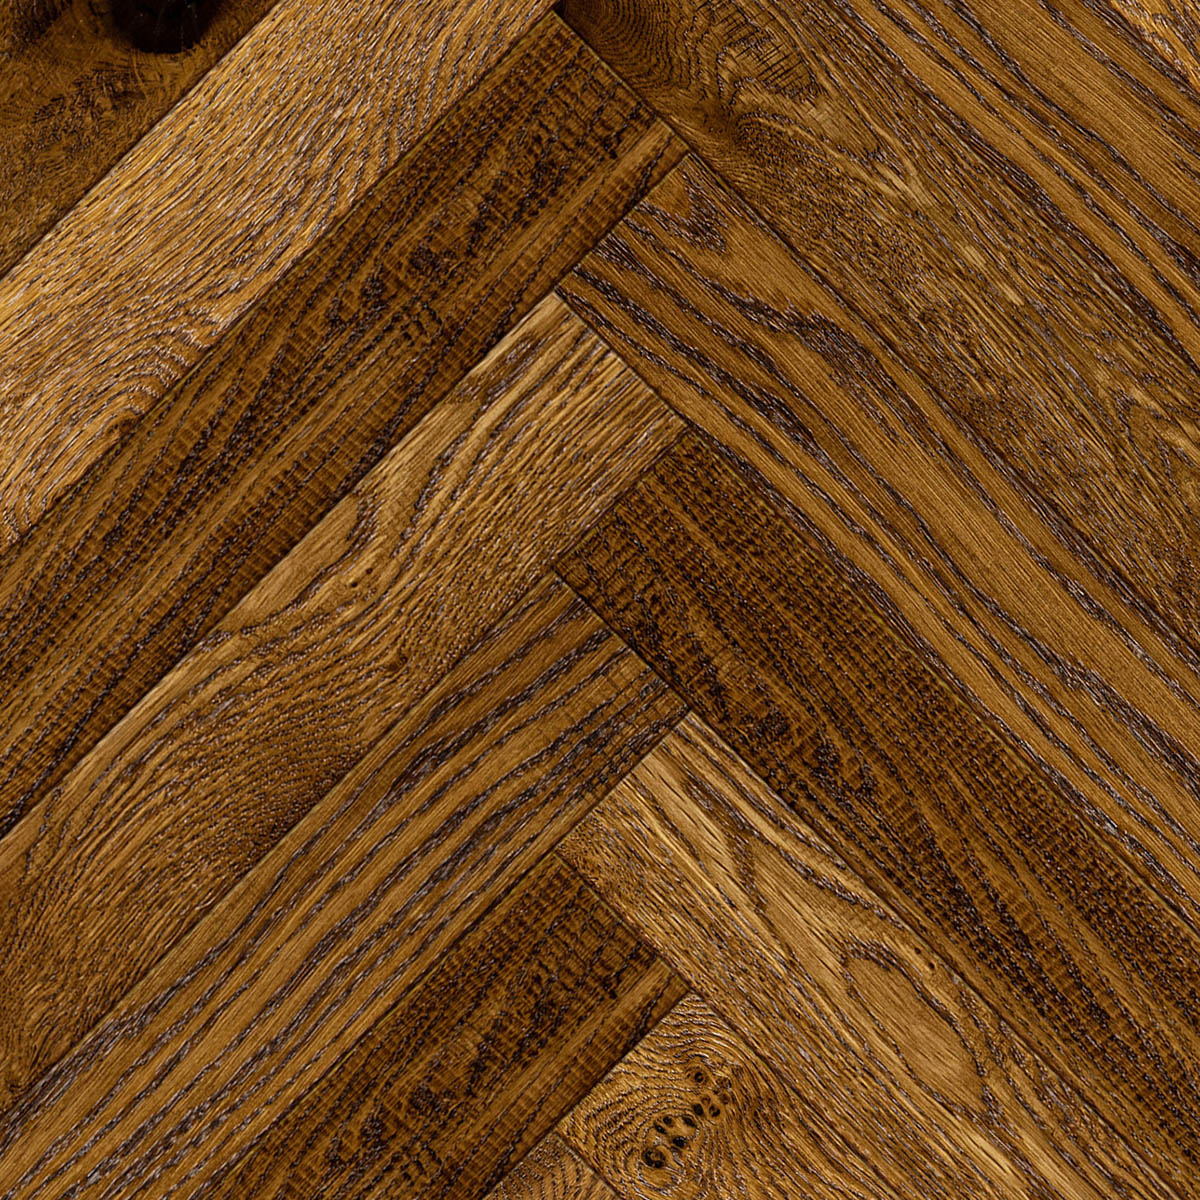 Crowden Herringbone - Hand-Worked, Brushed, Distressed Rustic Oak Floor